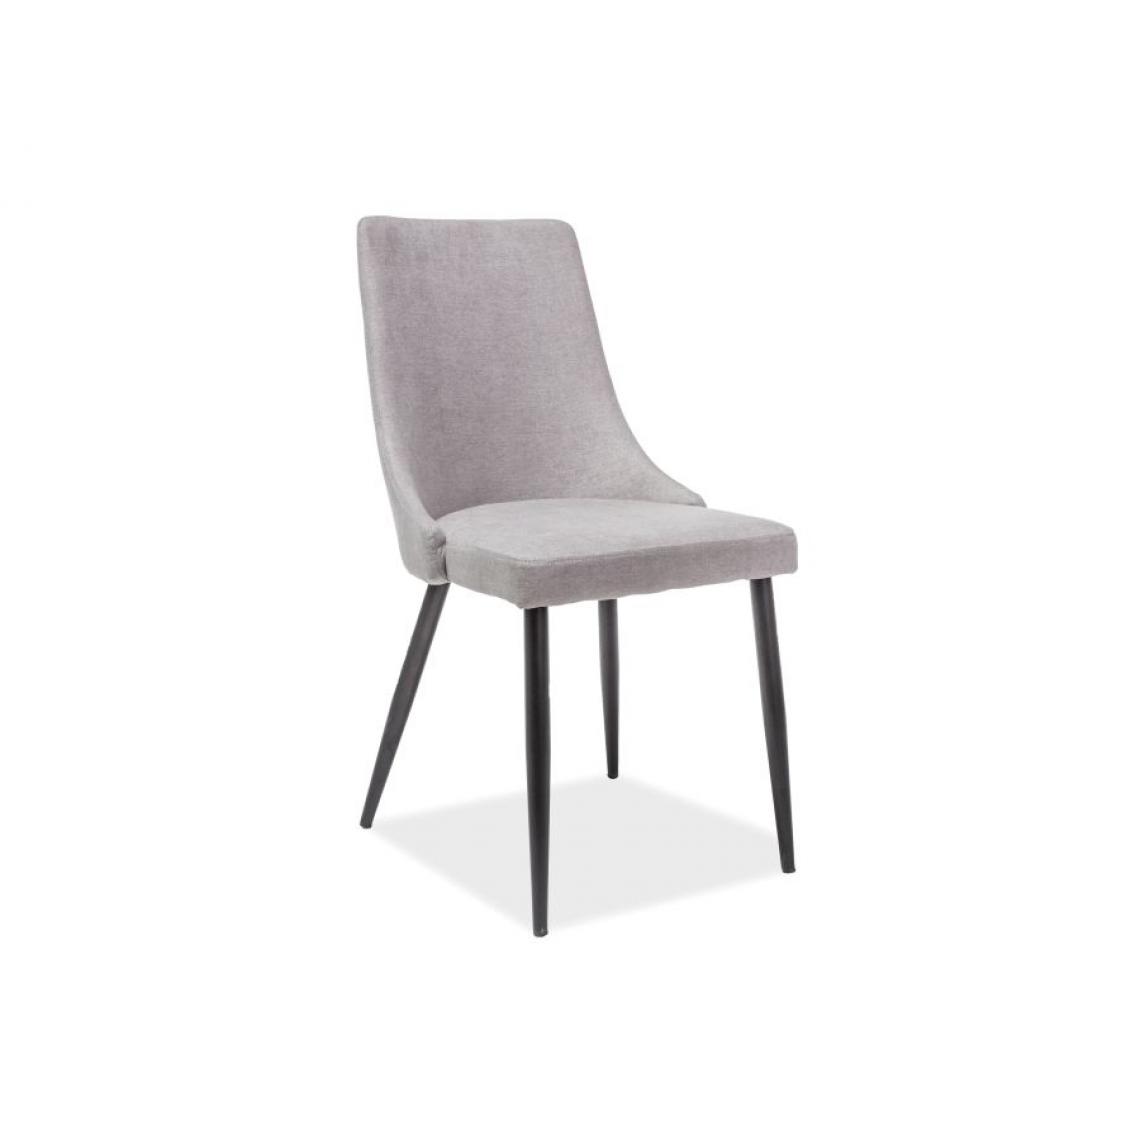 Hucoco - NOBEN | Chaise matelassée avec pieds en métal salon/salle à manger | 91x46x43 cm | Rembourrée en tissu | Base robuste - Gris - Chaises